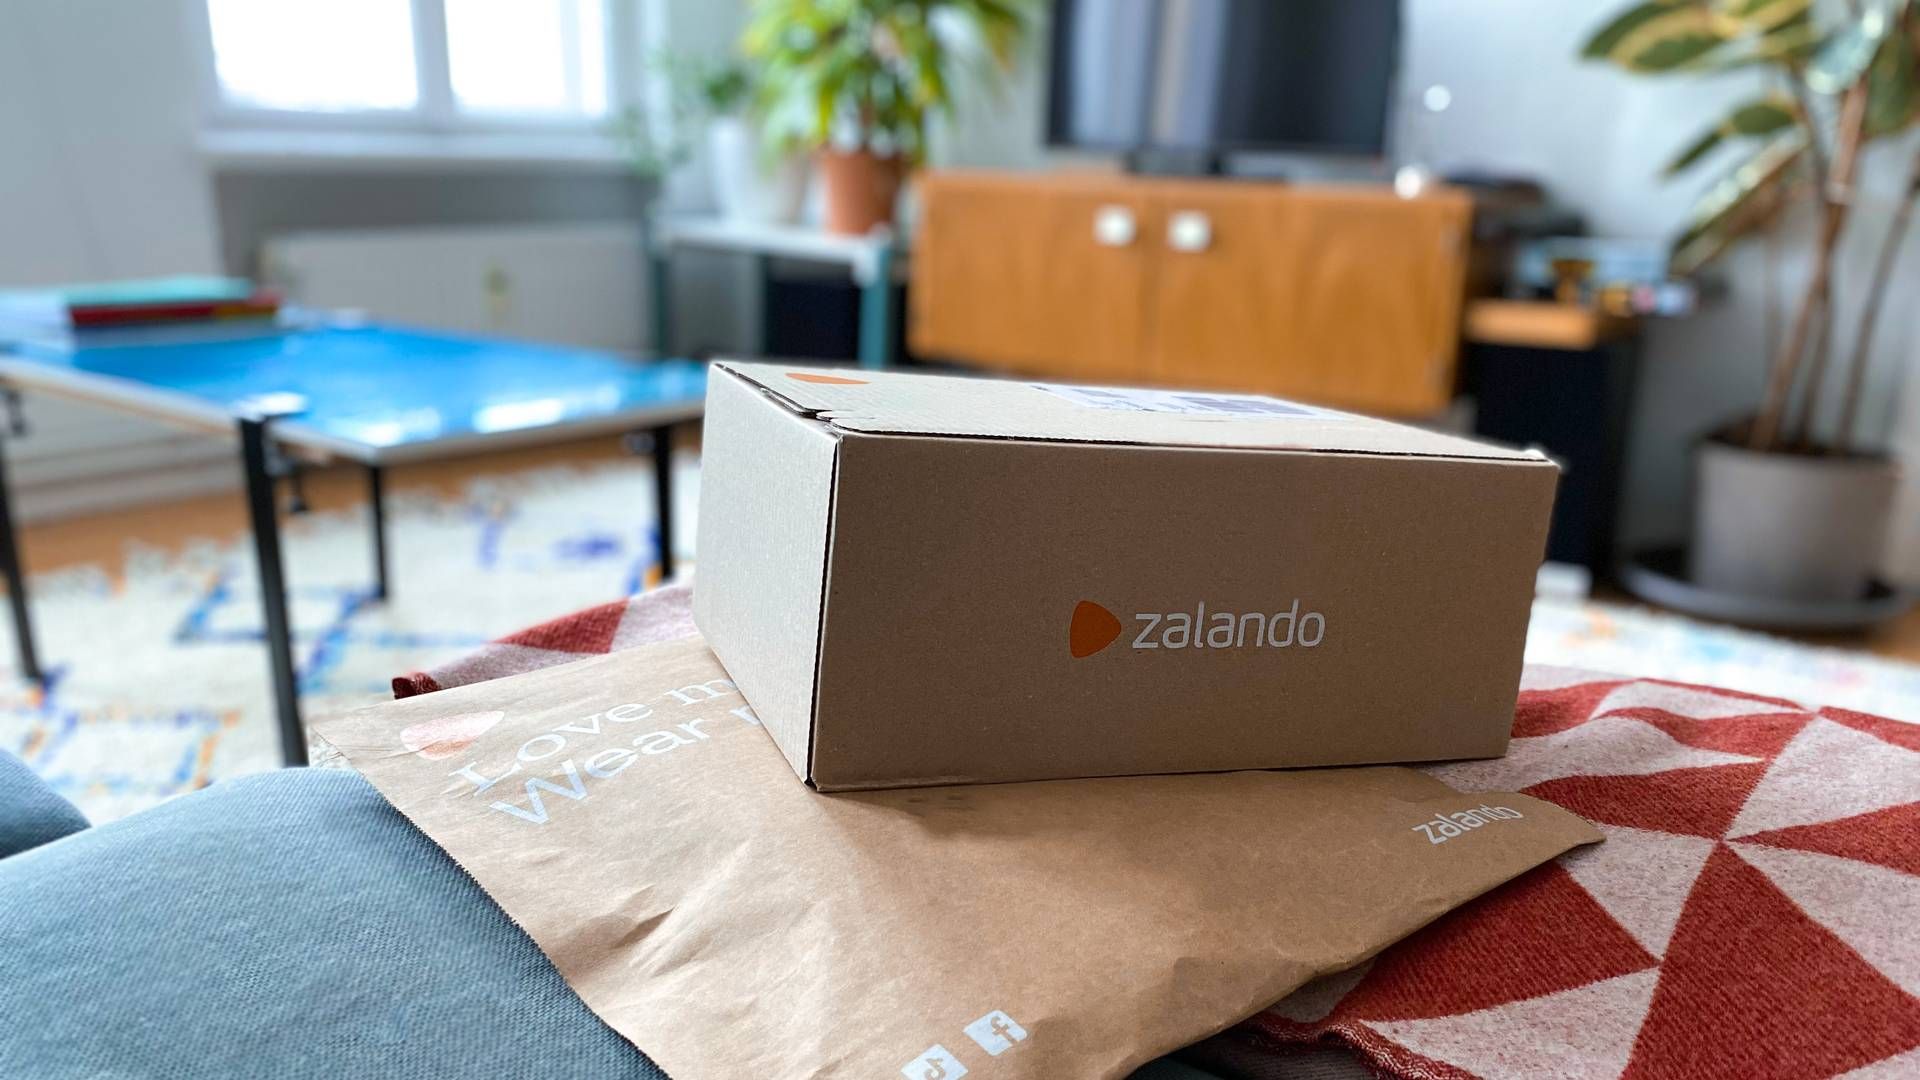 Zalando, der er blandt de førende modeplatforme i Europa, må nu foretage flere ændringer på grund af vildledende markedsføring. | Foto: Pr/zalando